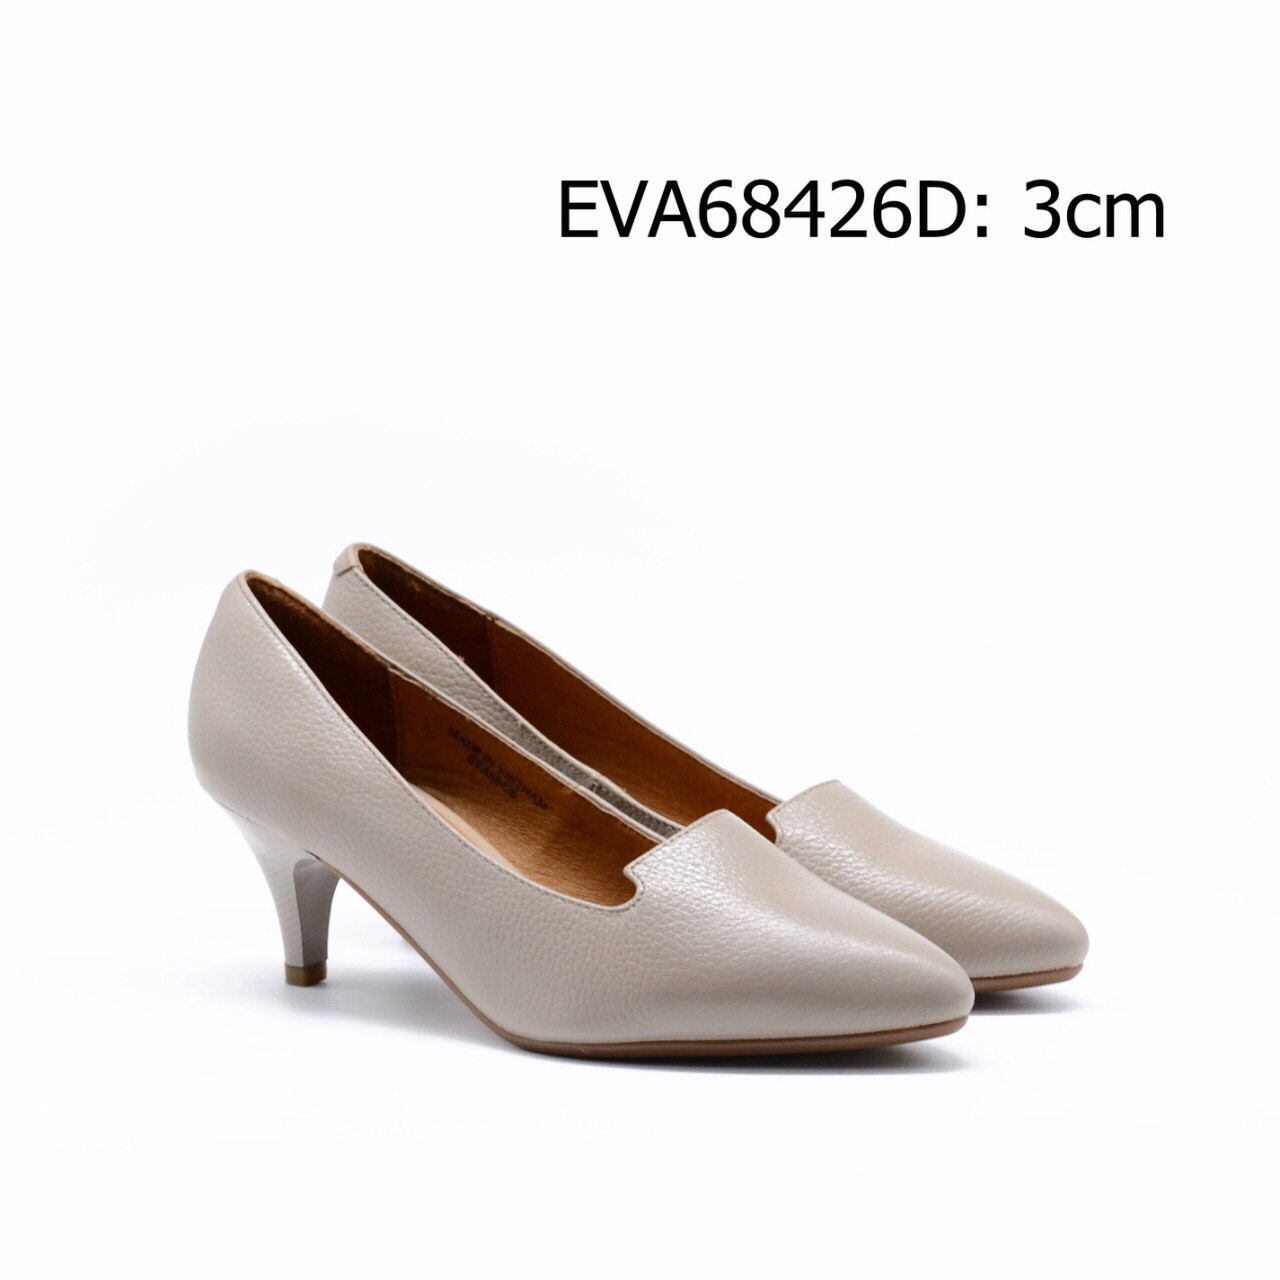 Giày công sở EVA68426D cao 3cm thiết kế da bò cao cấp